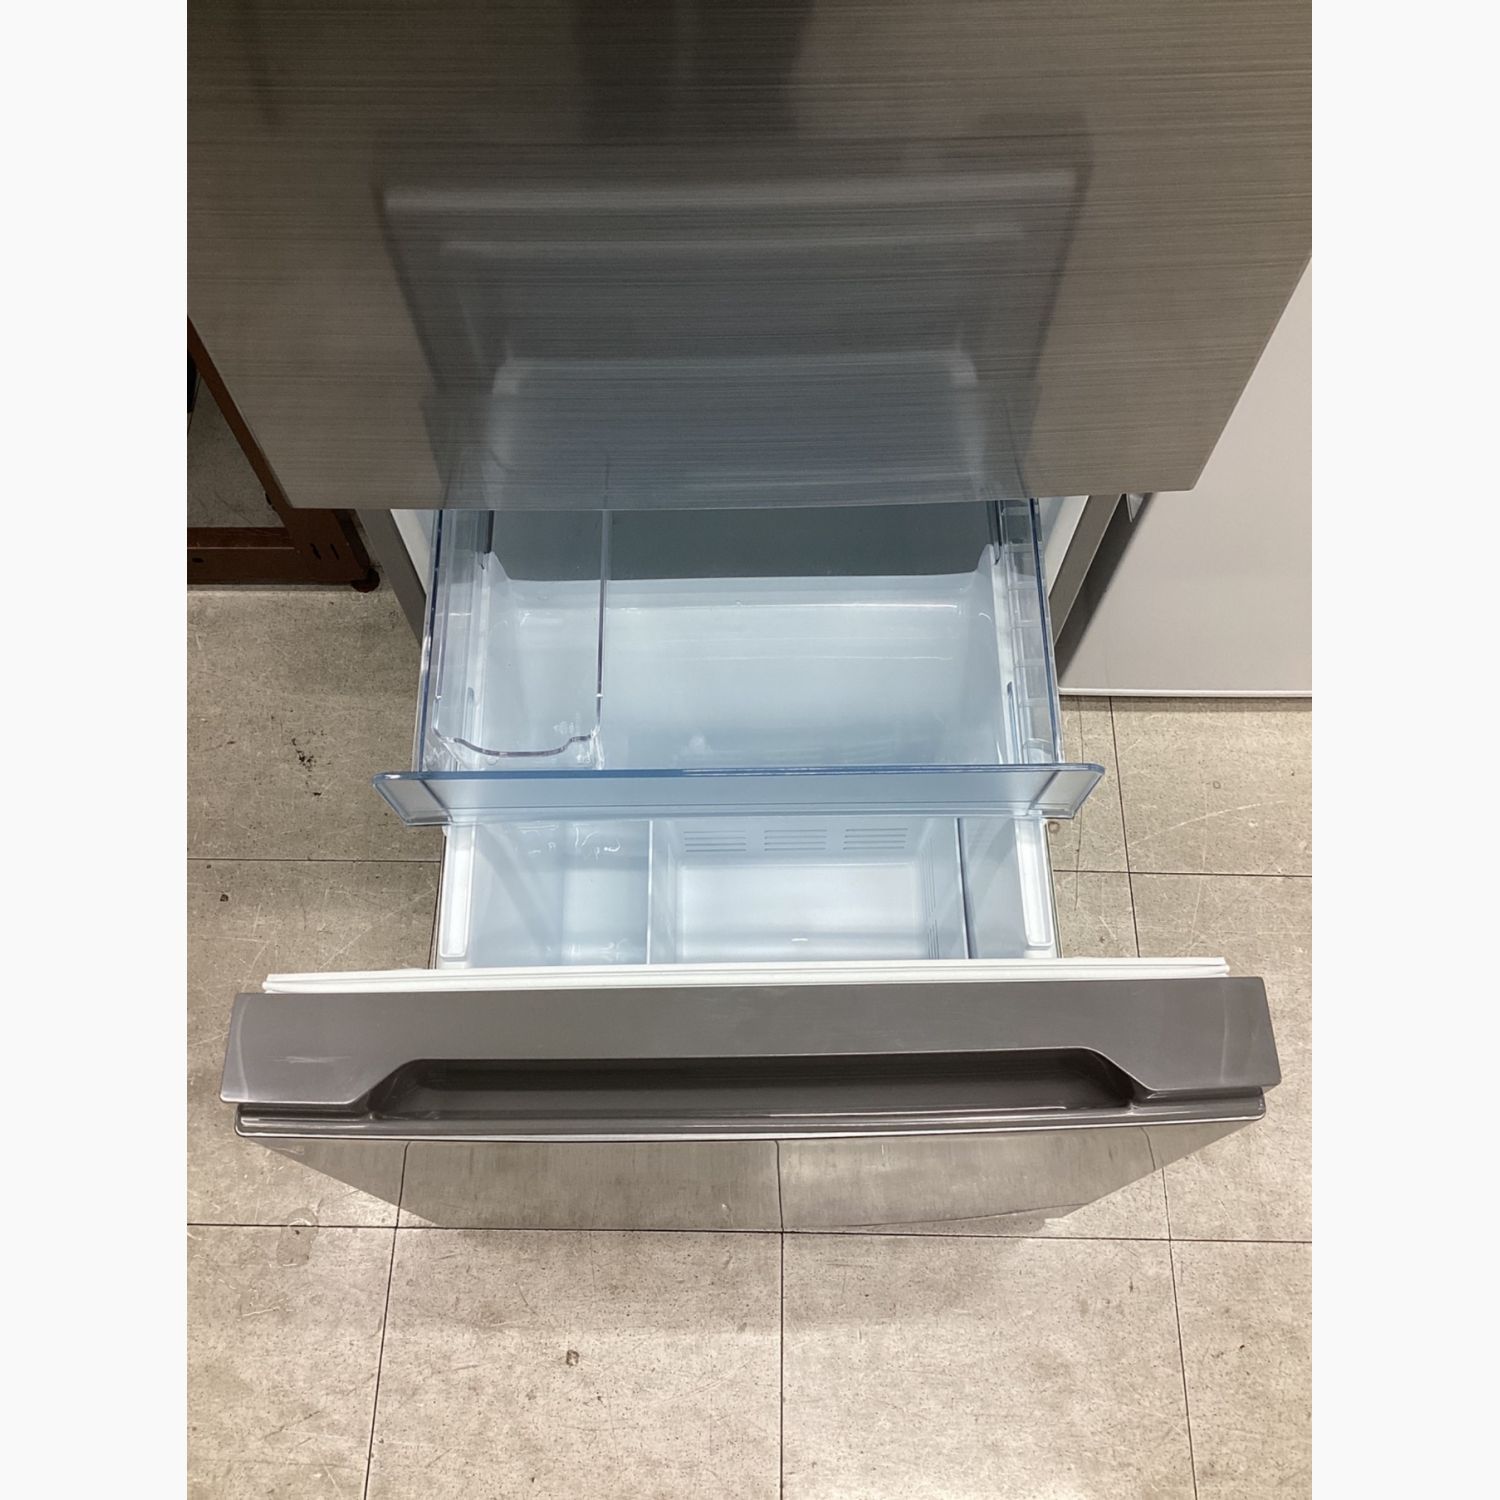 3ヵ月のみ使用】冷凍冷蔵庫 RL-154NA(S)【7月まで】 - 生活家電